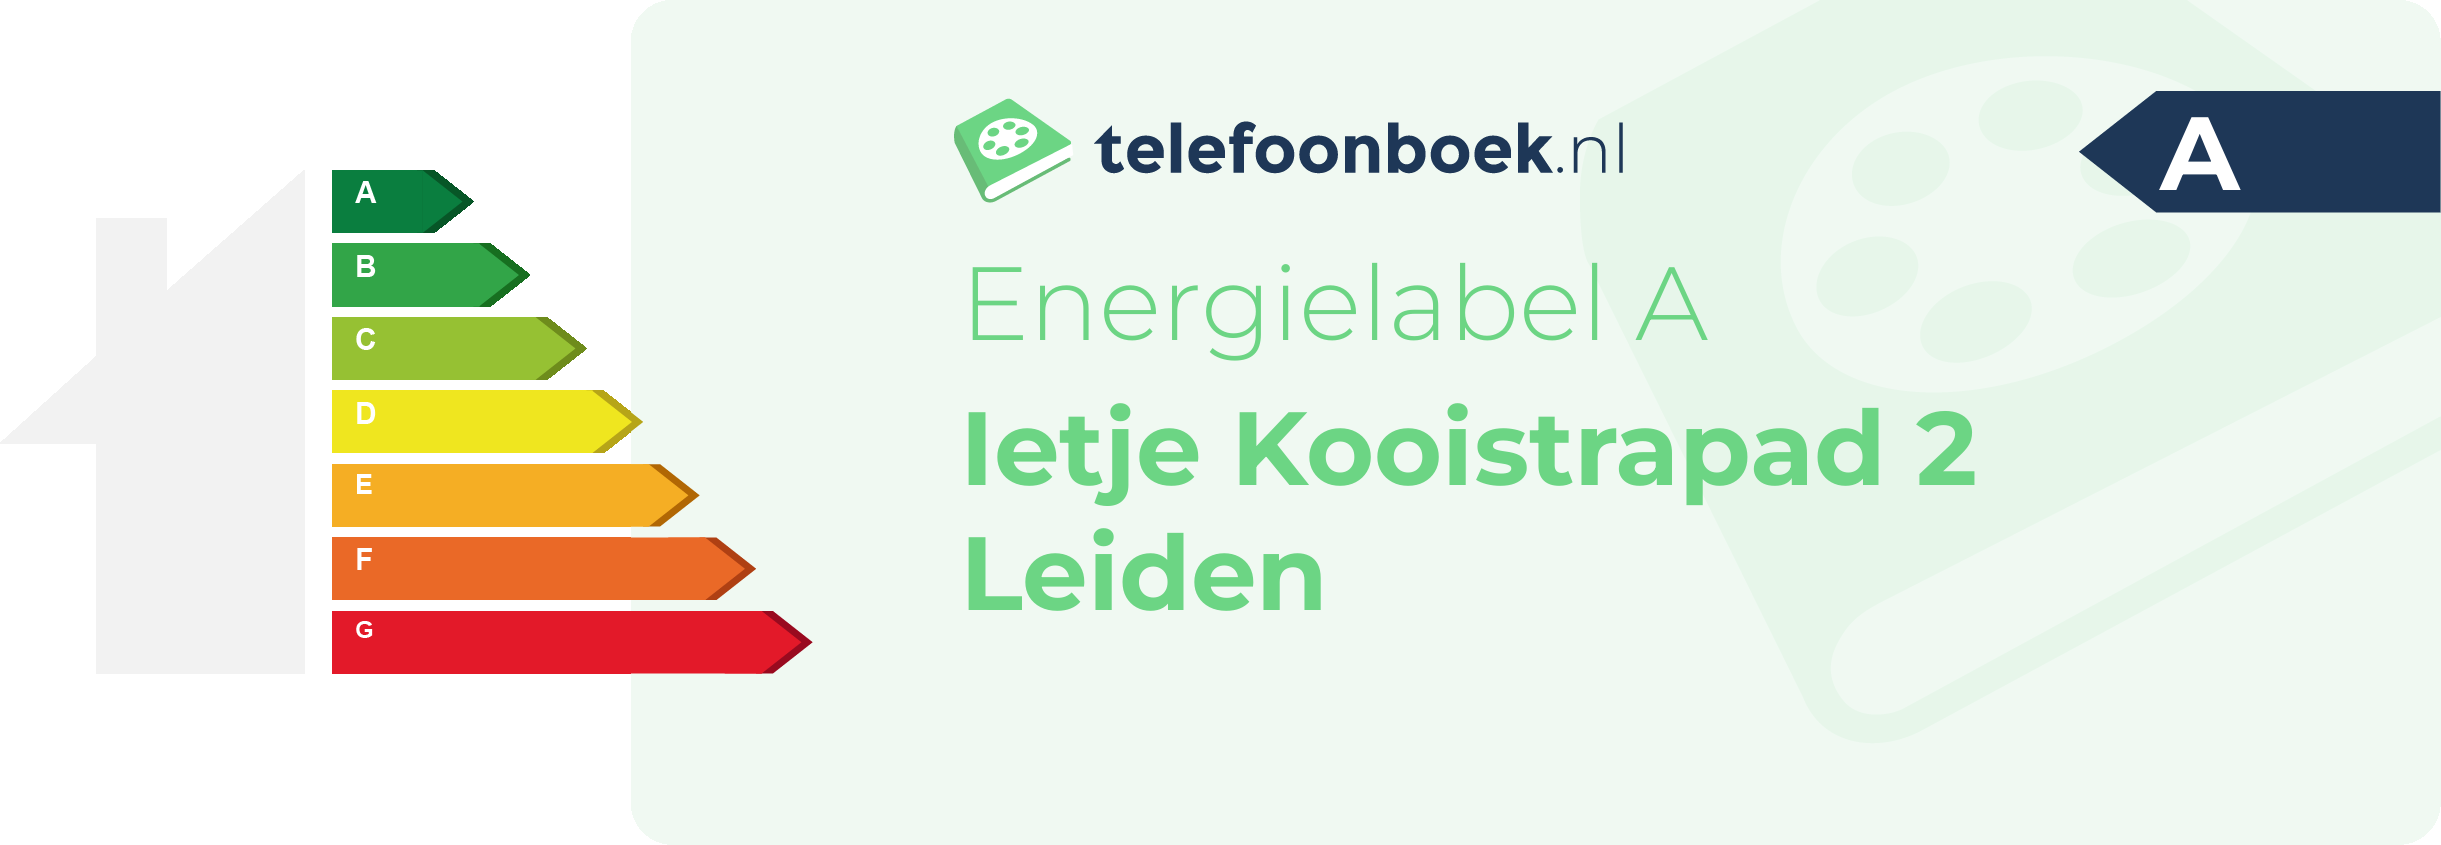 Energielabel Ietje Kooistrapad 2 Leiden